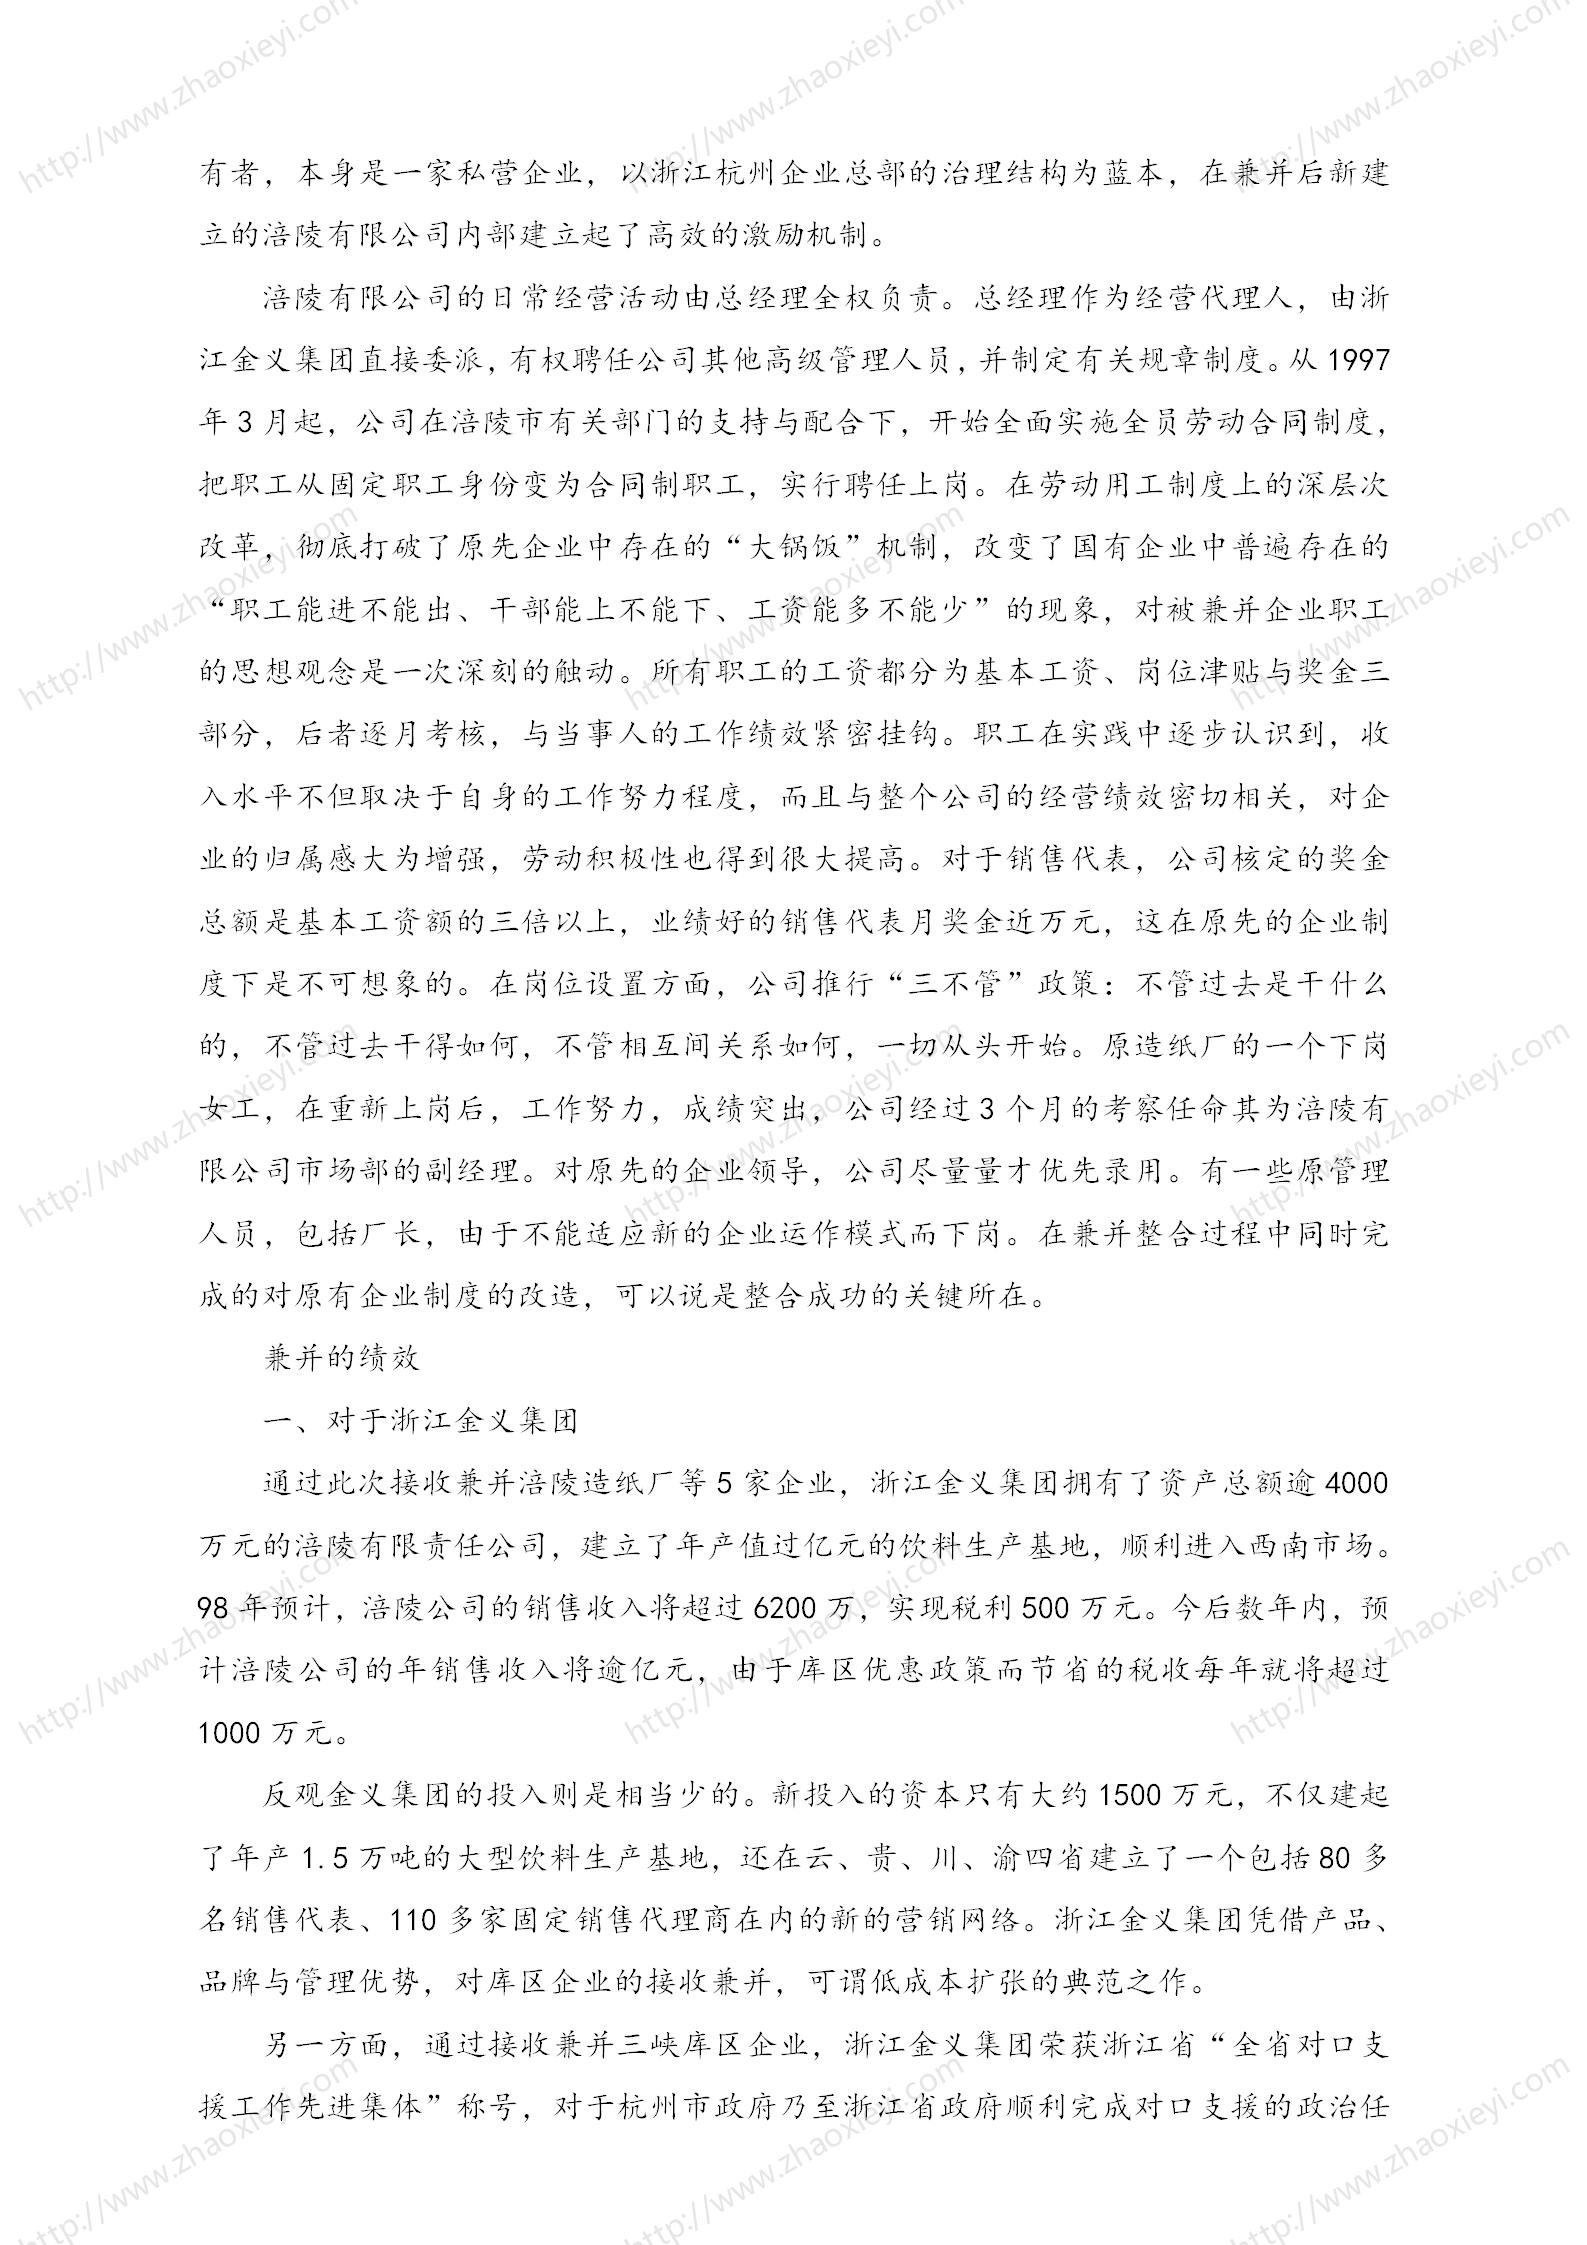 中国企业并购经典案例_130.jpg